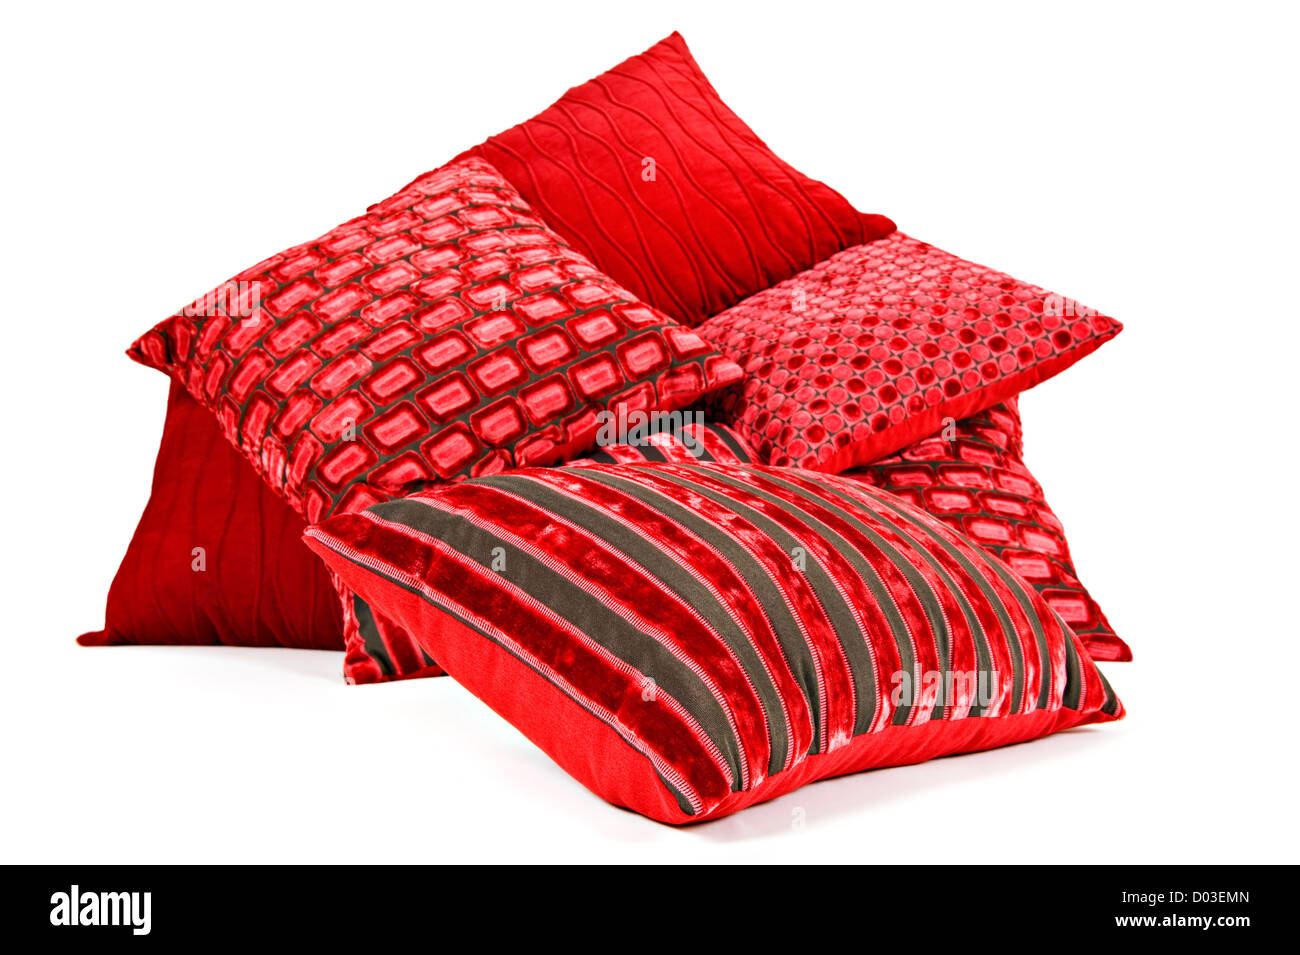 Rote Kissen gestapelt auf einem weißen Hintergrund mit Platz für text  Stockfotografie - Alamy